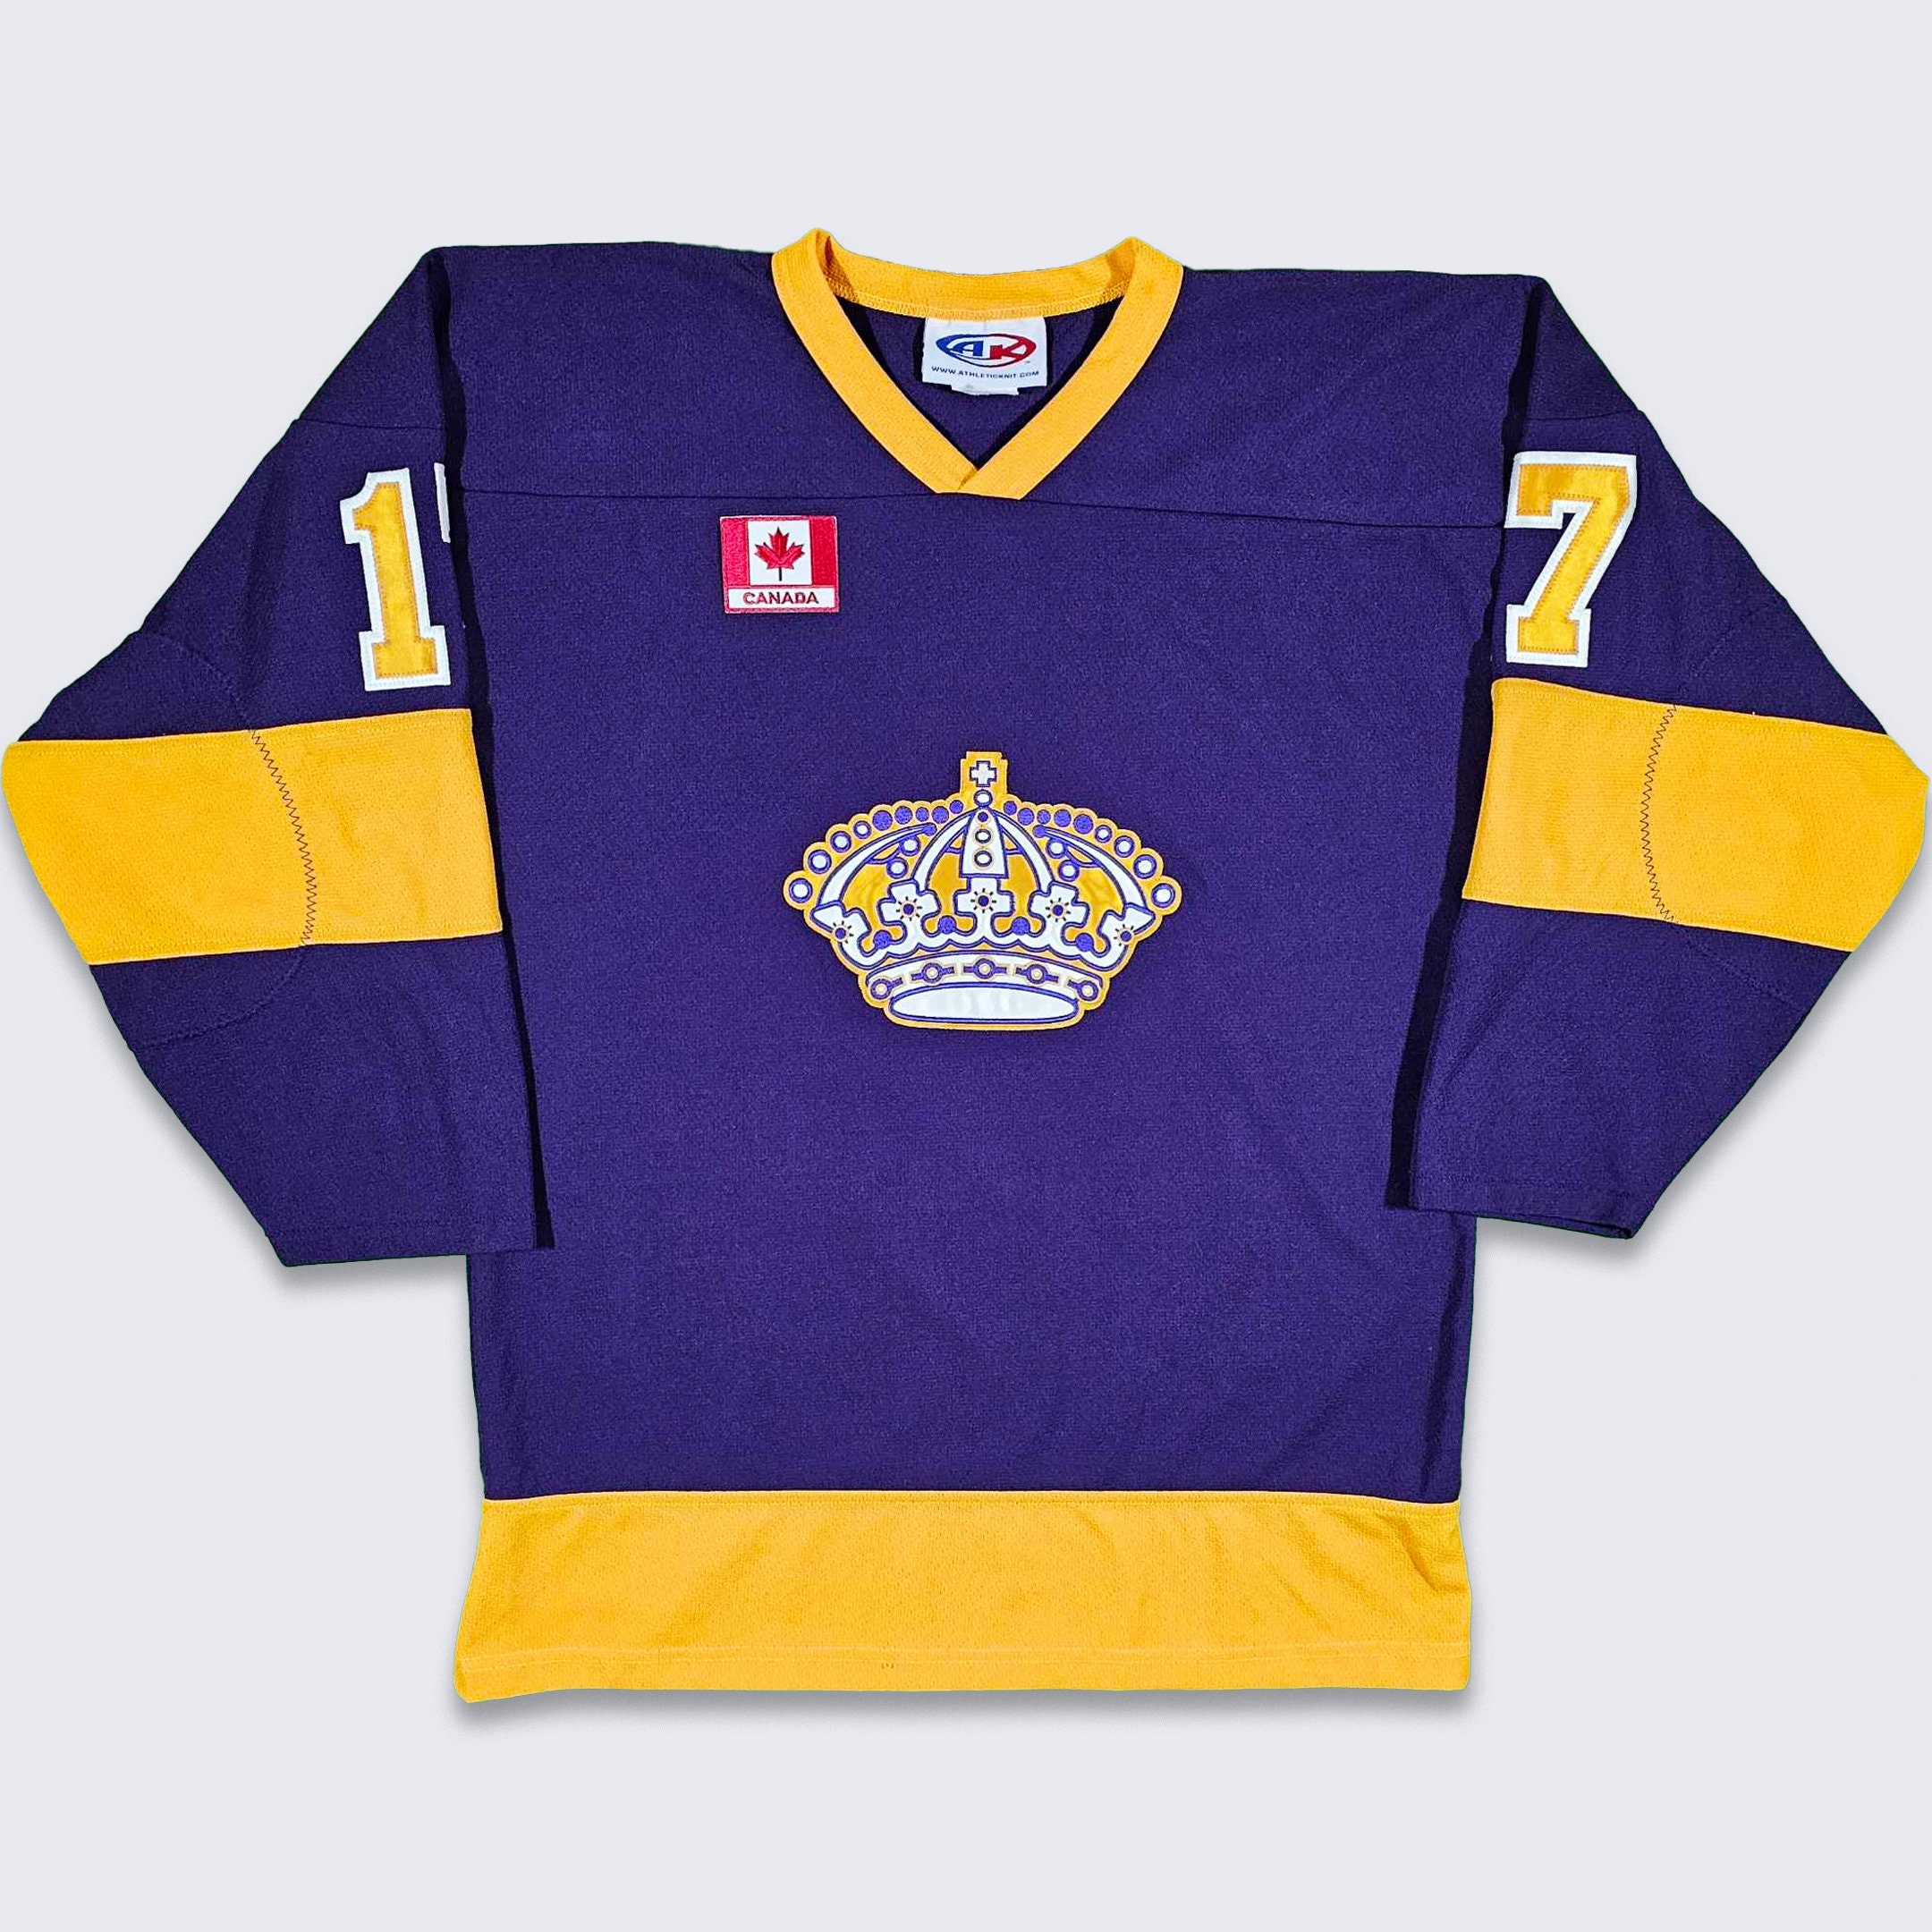 A modern Kings purple jersey : r/losangeleskings